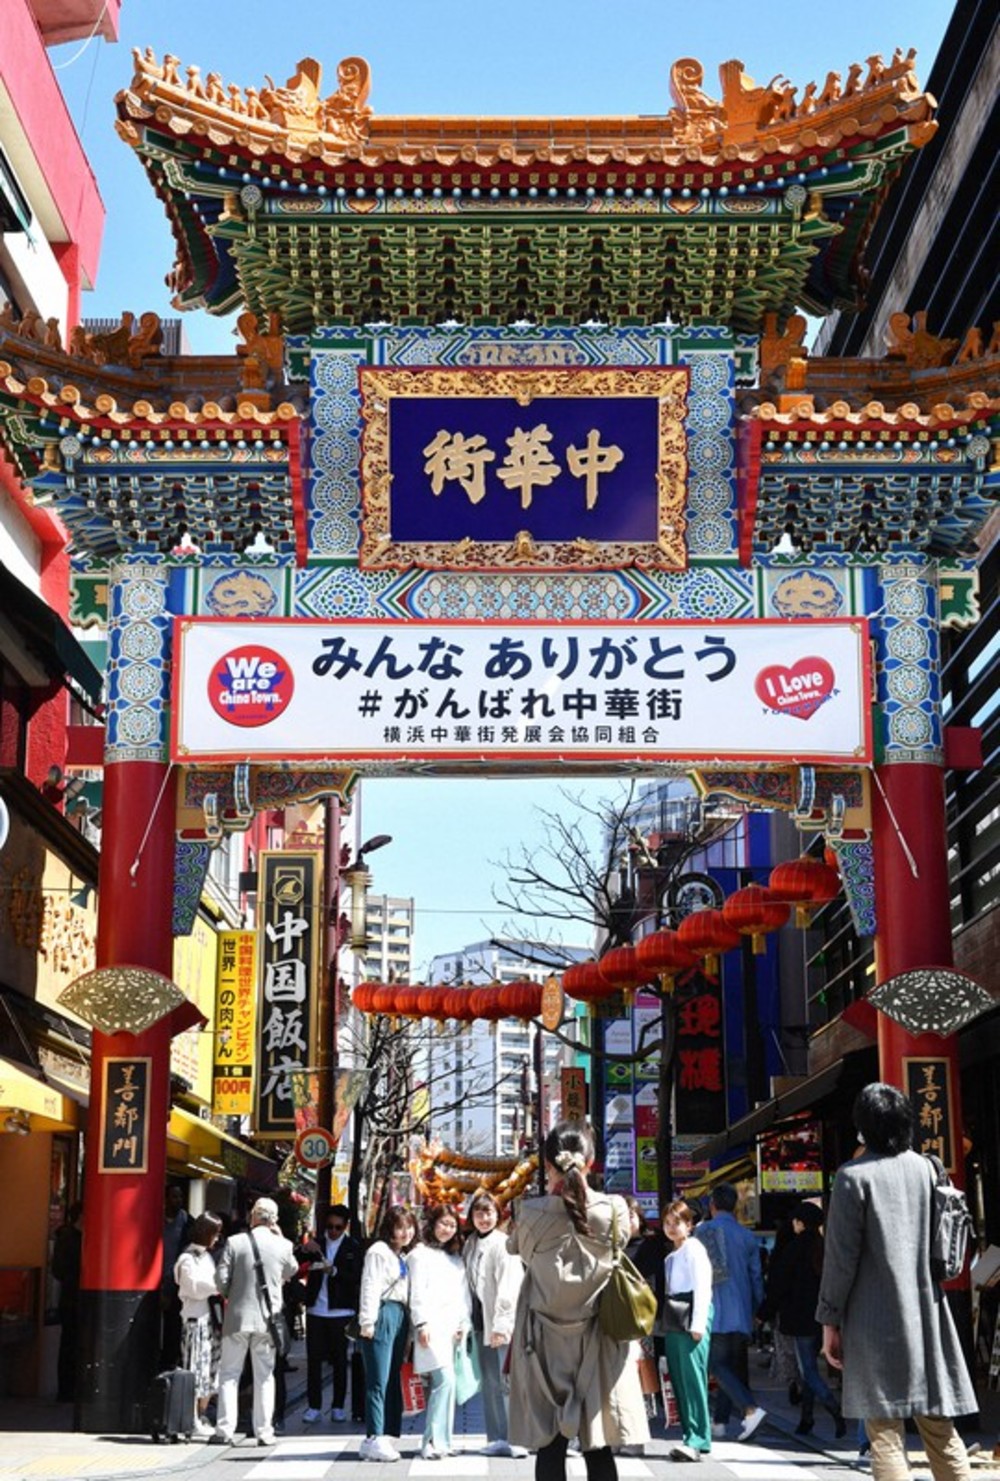 【横浜】中華街を食べ歩きしながら中華の華やかな街並みをパシャリ📷